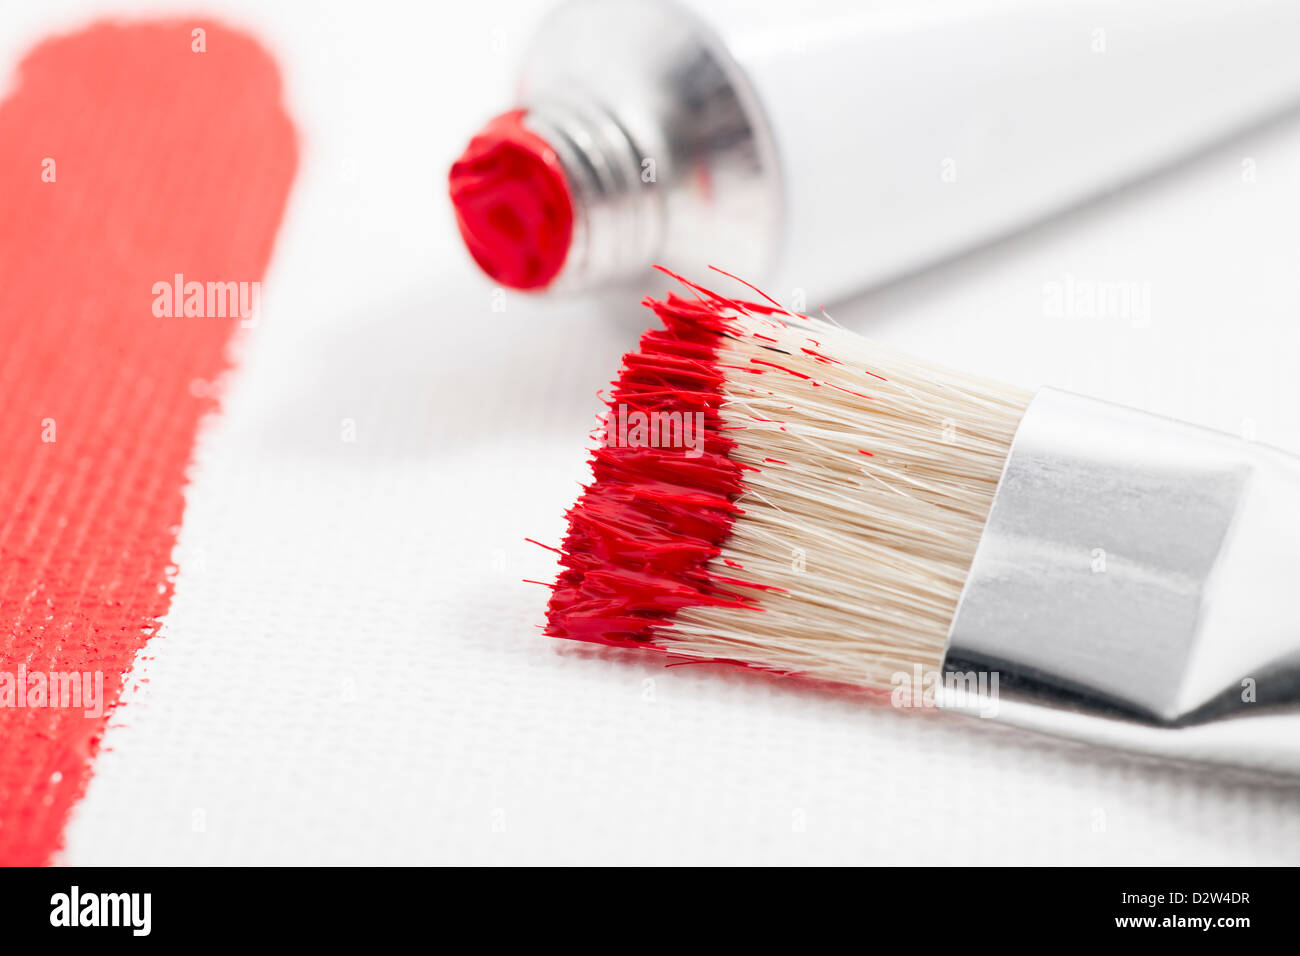 Pintura roja en el cepillo de la pintura con el tubo de pintura acrílica y trazo de pintura sobre lienzo Foto de stock